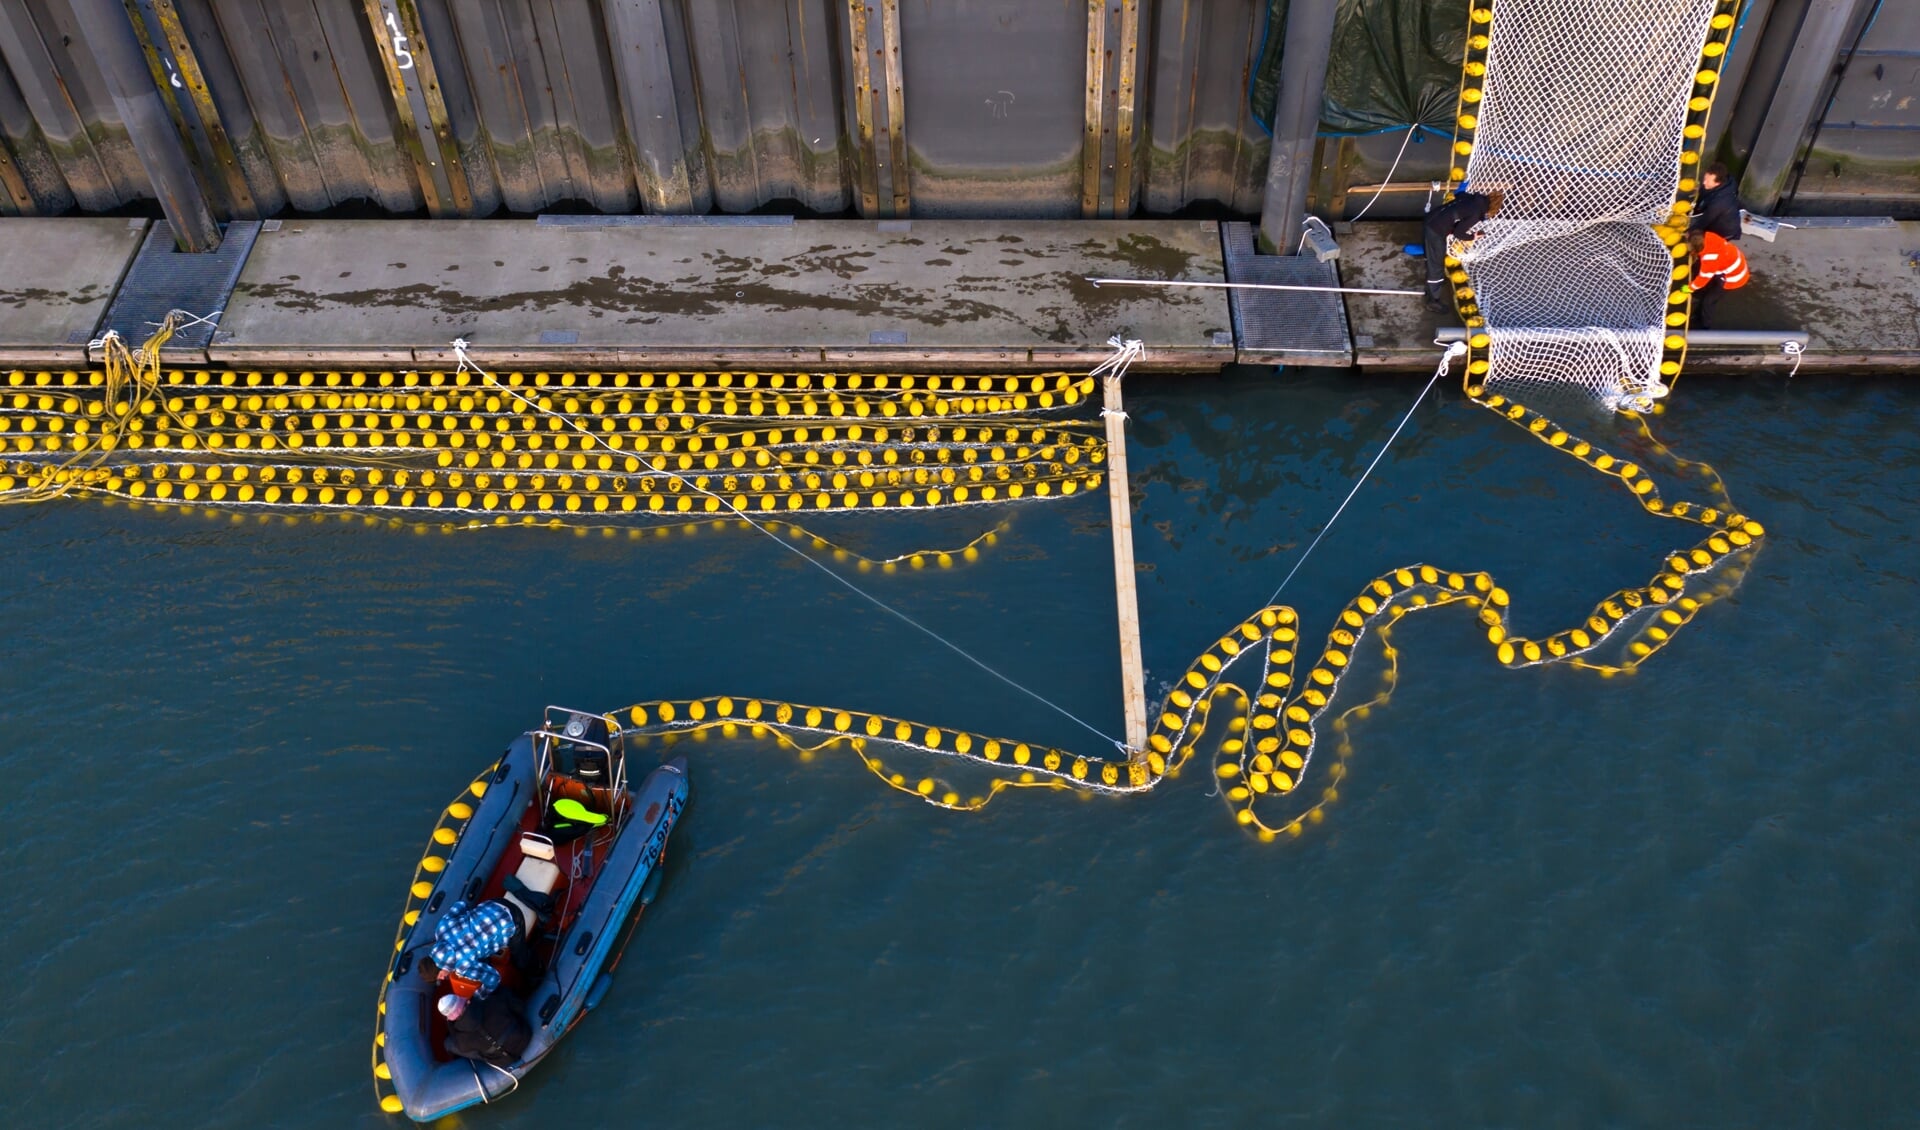 Een voorbeeld van duurzame innovatie op het snijvlak van voedsel en klimaat: in de haven van Scheveningen experimenteert een bedrijf met zeewier. Ook in de Noordzee is een 'proeftuin' ingericht.